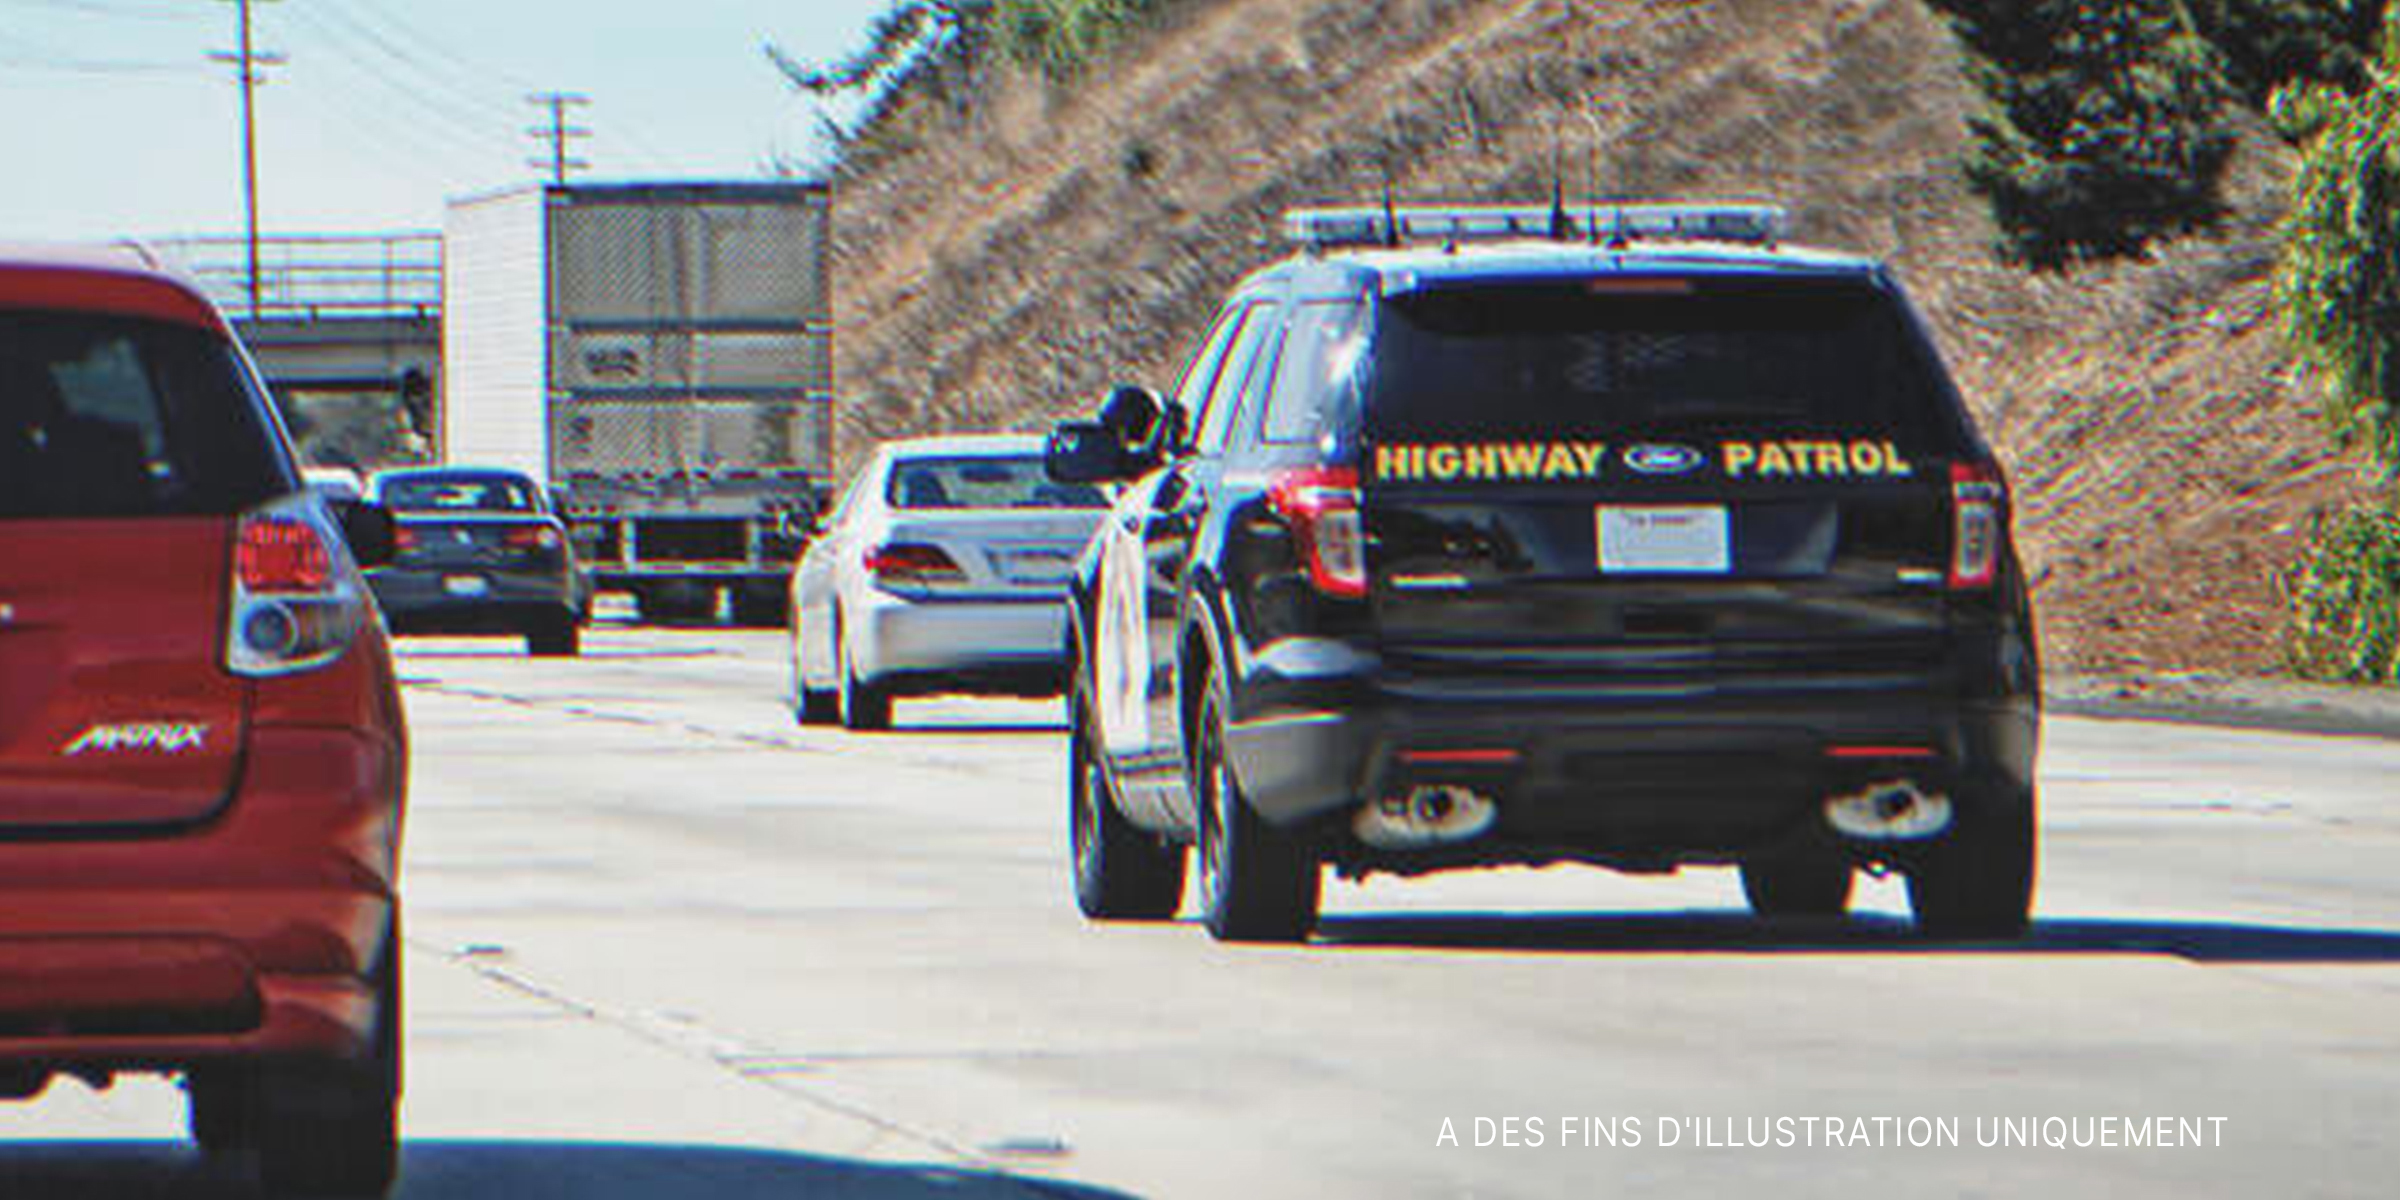 Une voiture de patrouille routière roulant sur une autoroute | Source : Flickr / Chris Yarzab (CC BY 2.0)